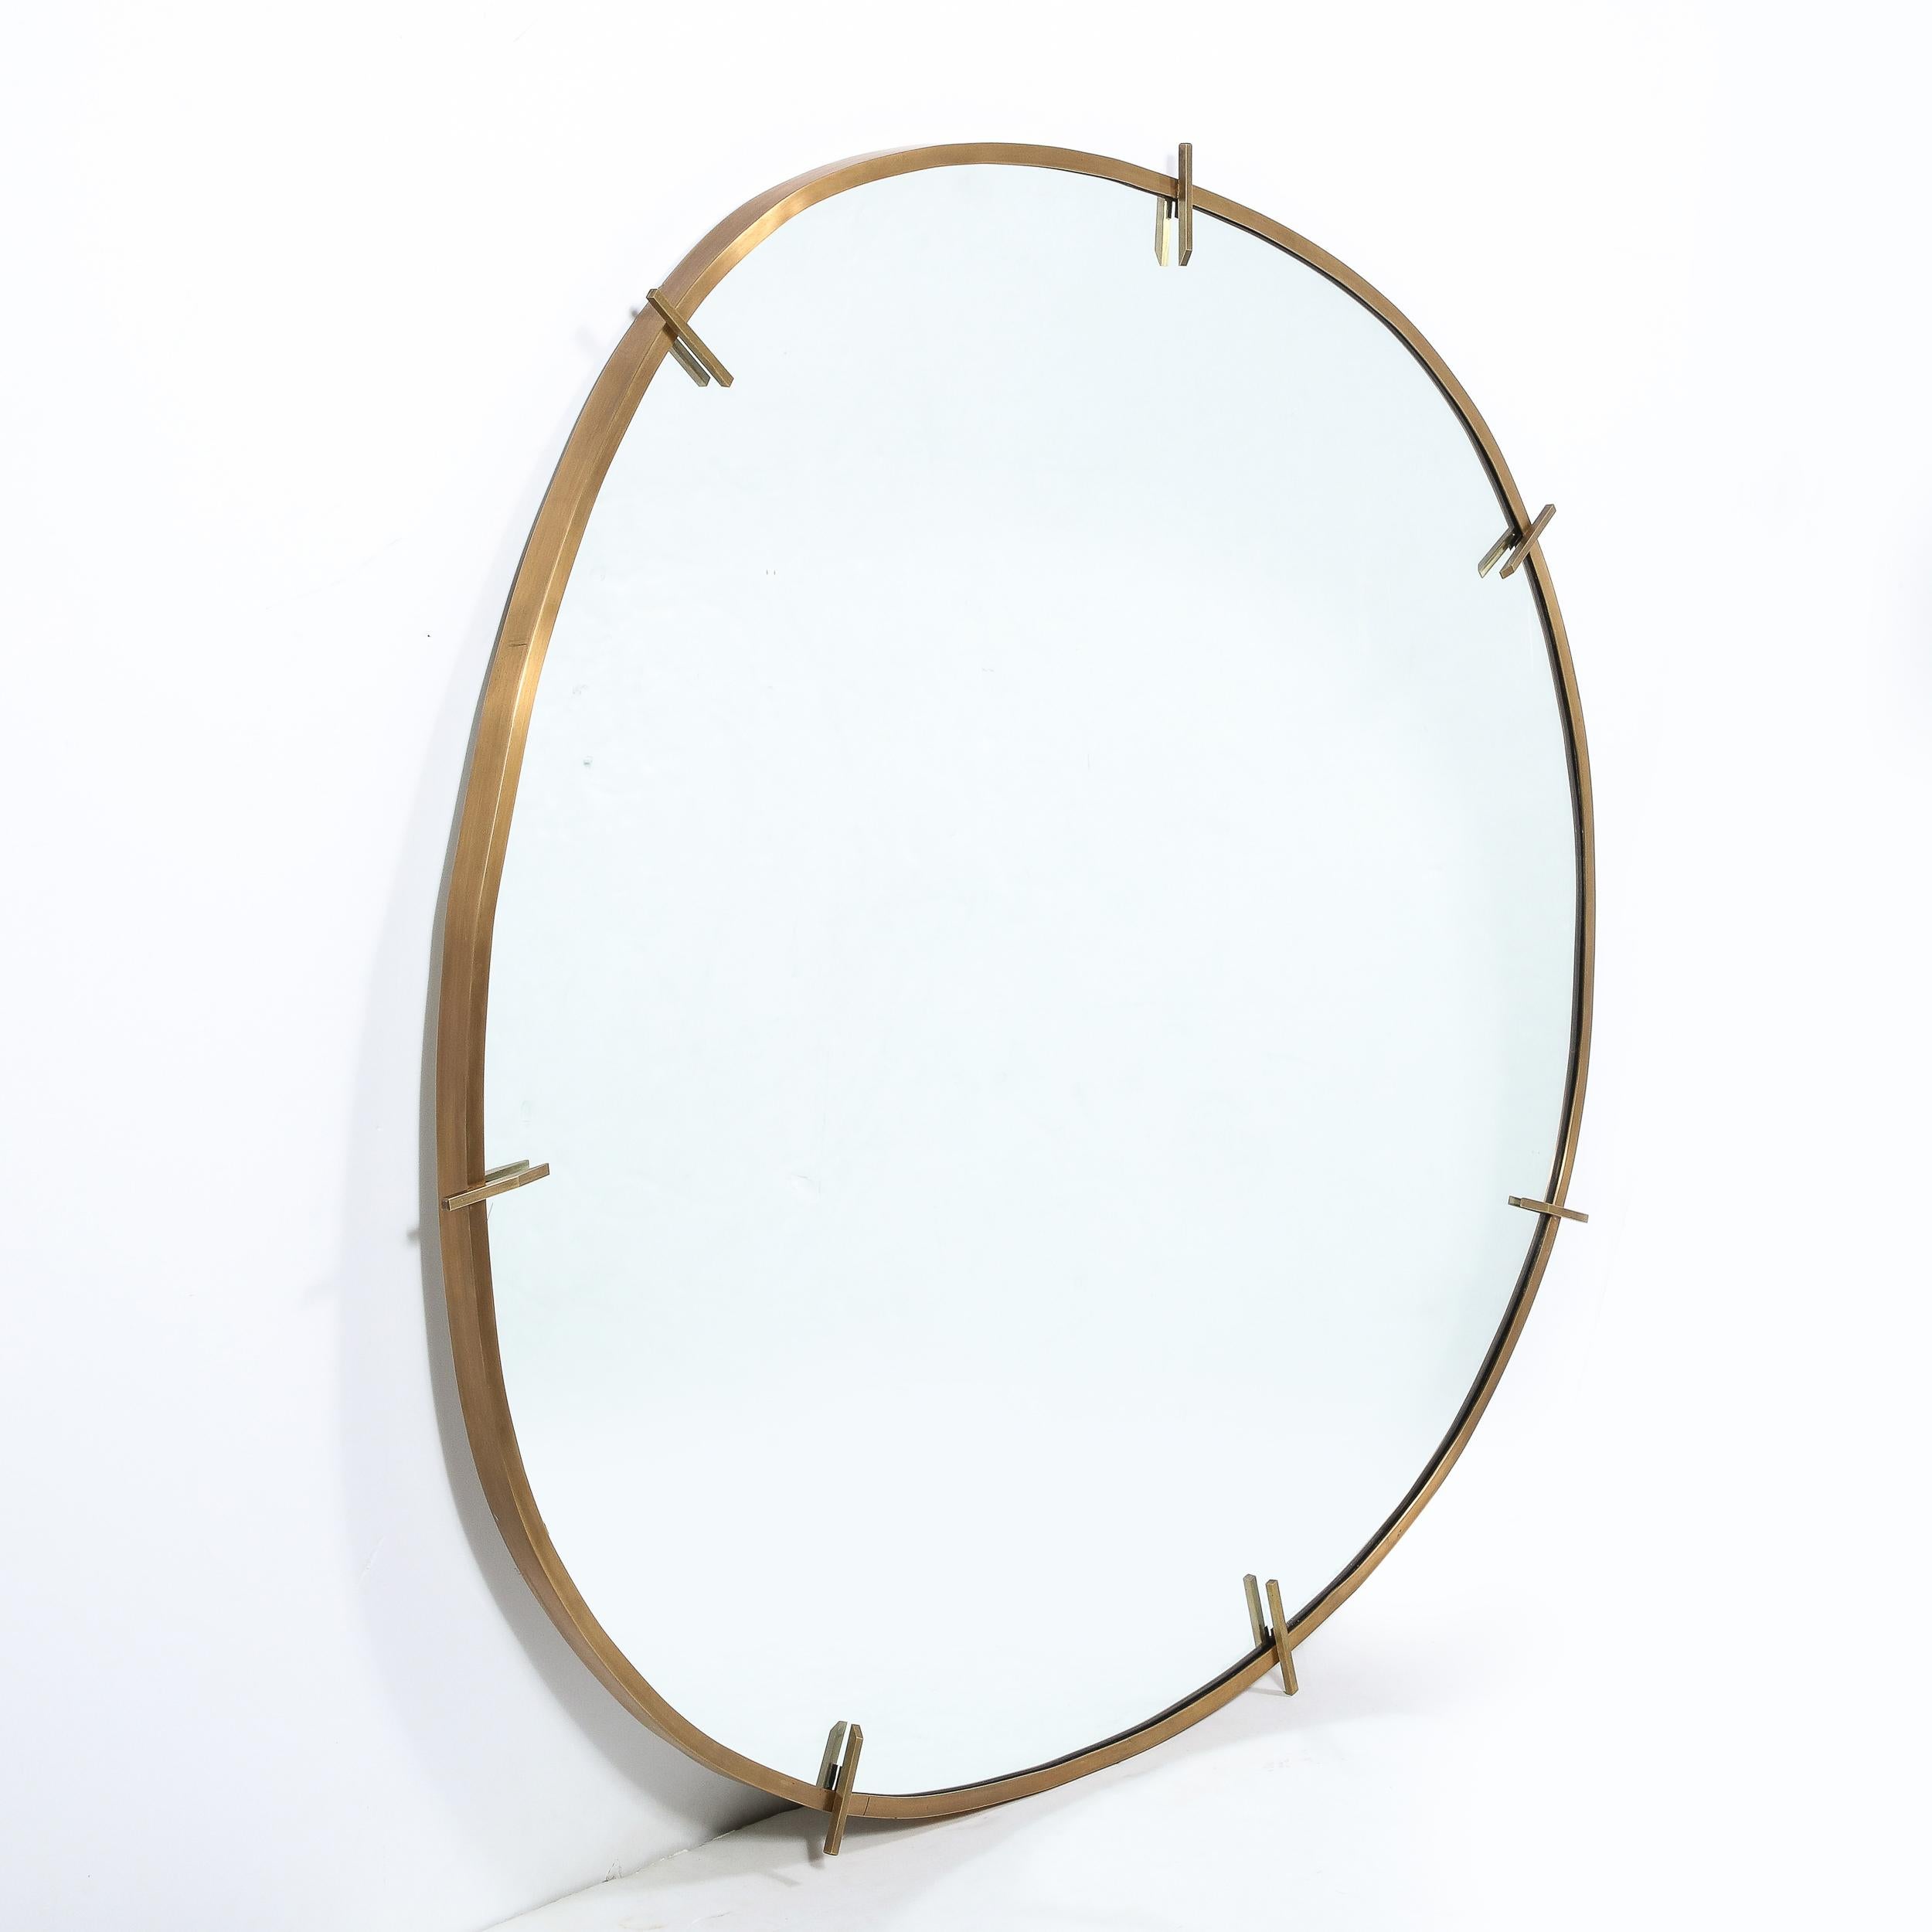 Dieser raffinierte Spiegel, der in unserem exklusiven Atelier handgefertigt wird, ist eines der wenigen zeitgenössischen Stücke, die wir führen, und das aus gutem Grund. Er verkörpert die alte Handwerkskunst und die Linien des Mid-Century Modernist